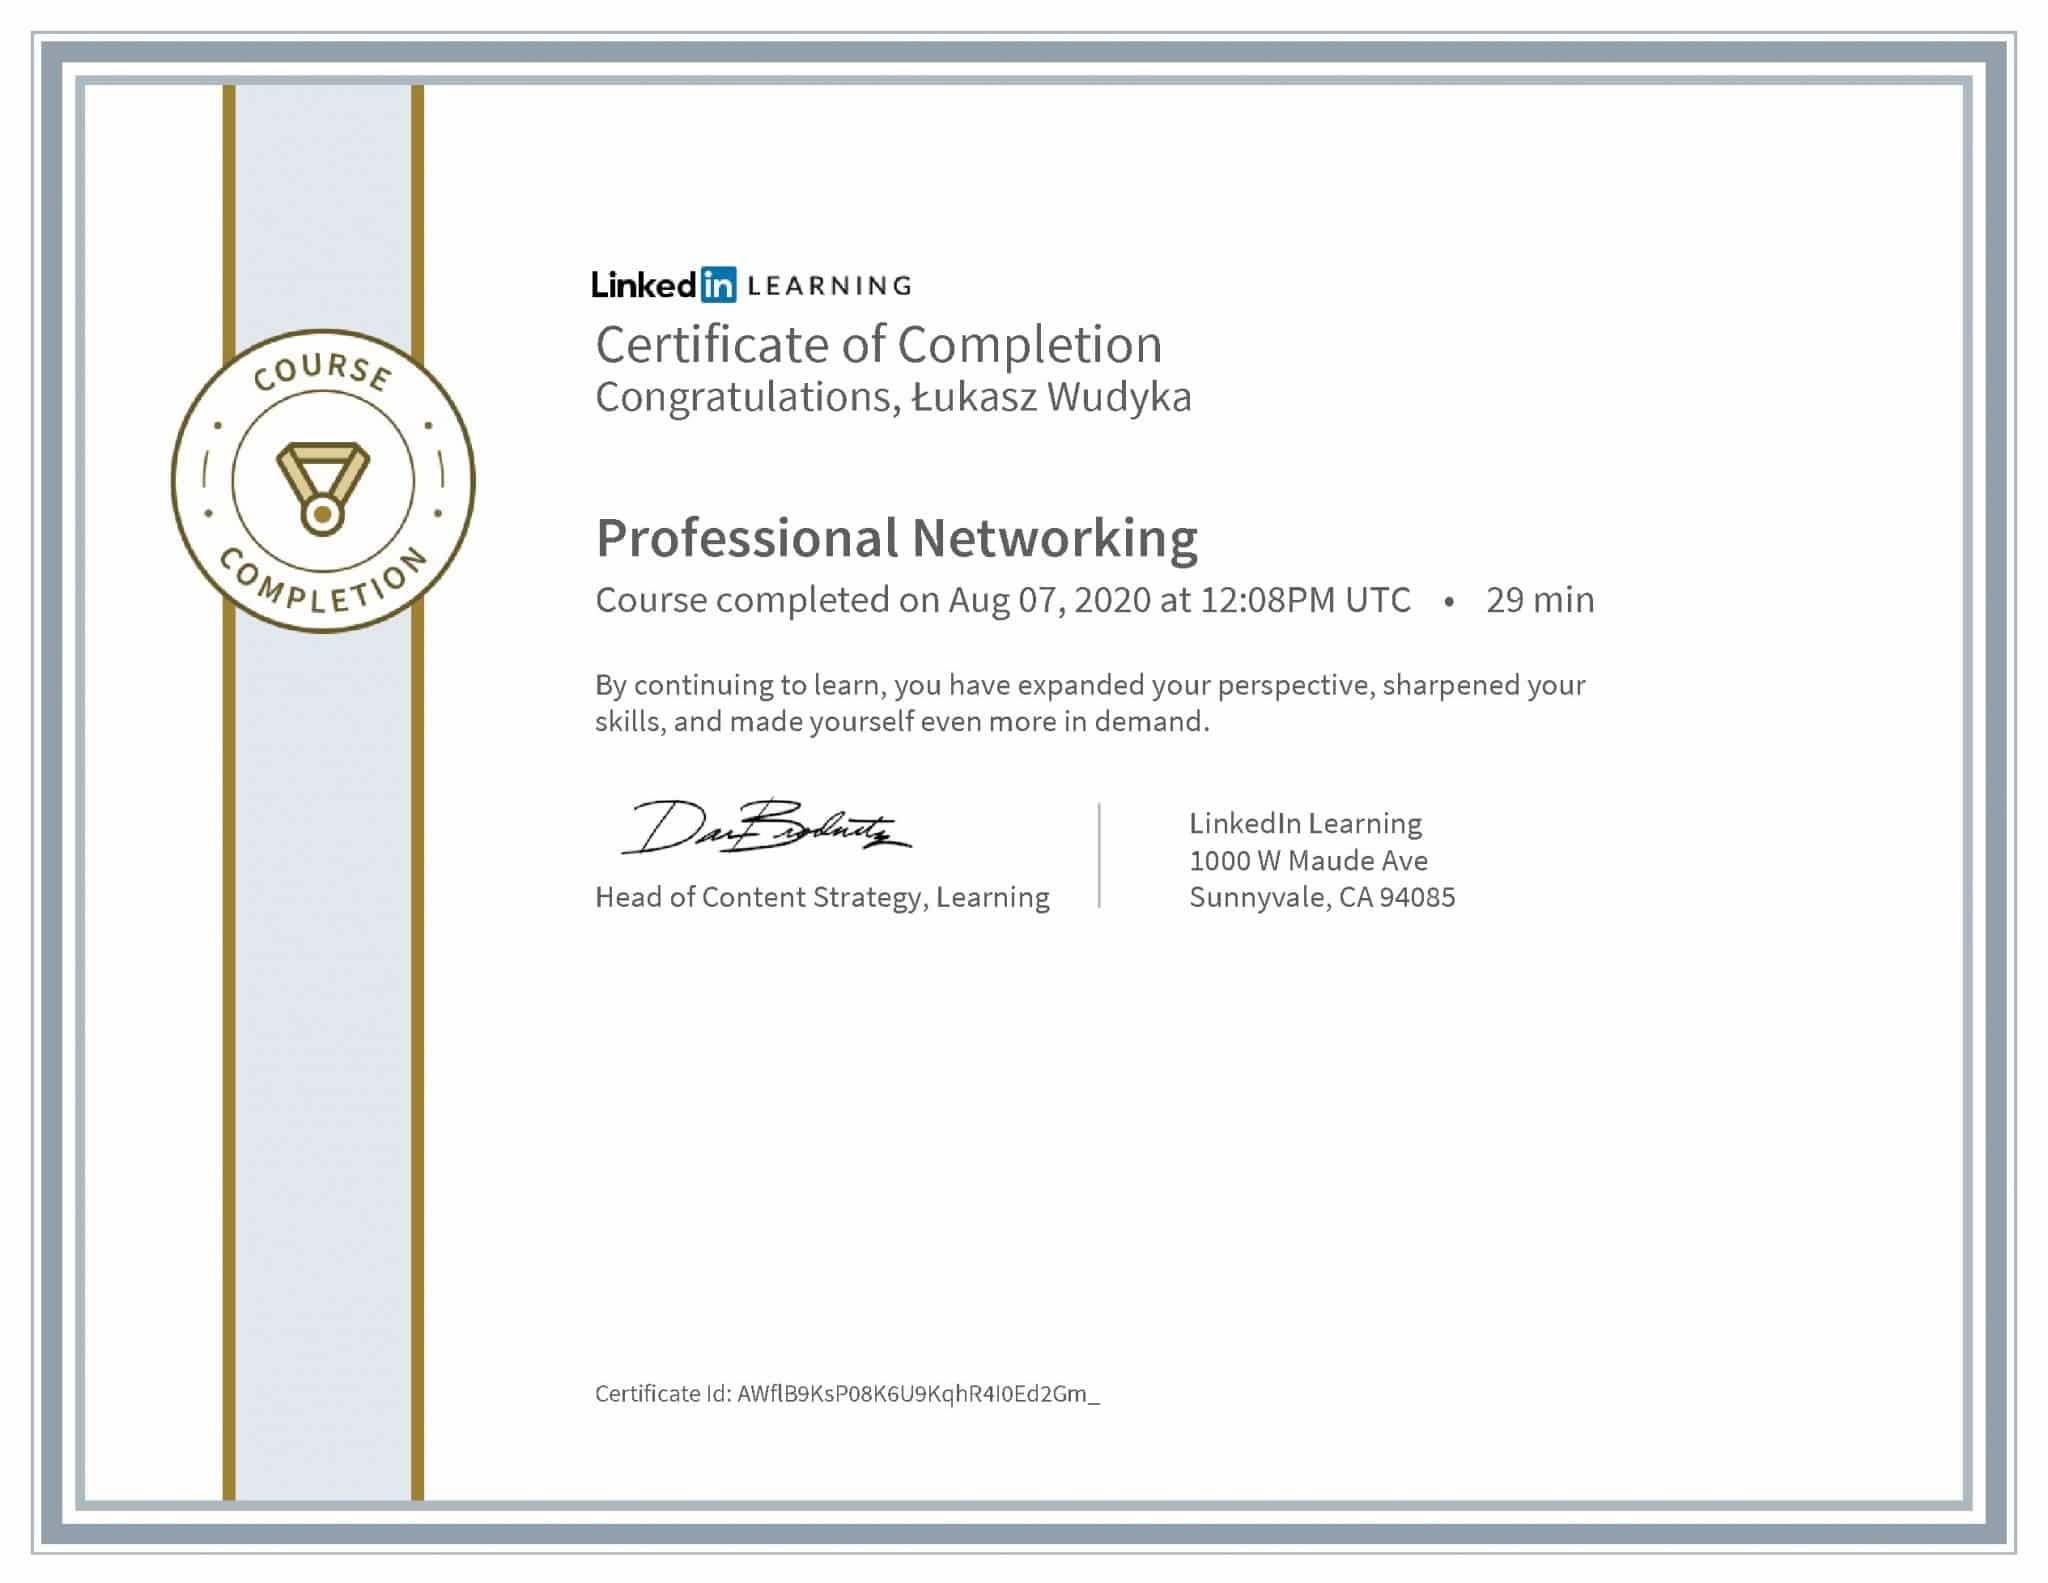 Łukasz Wudyka certyfikat LinkedIn Professional Networking